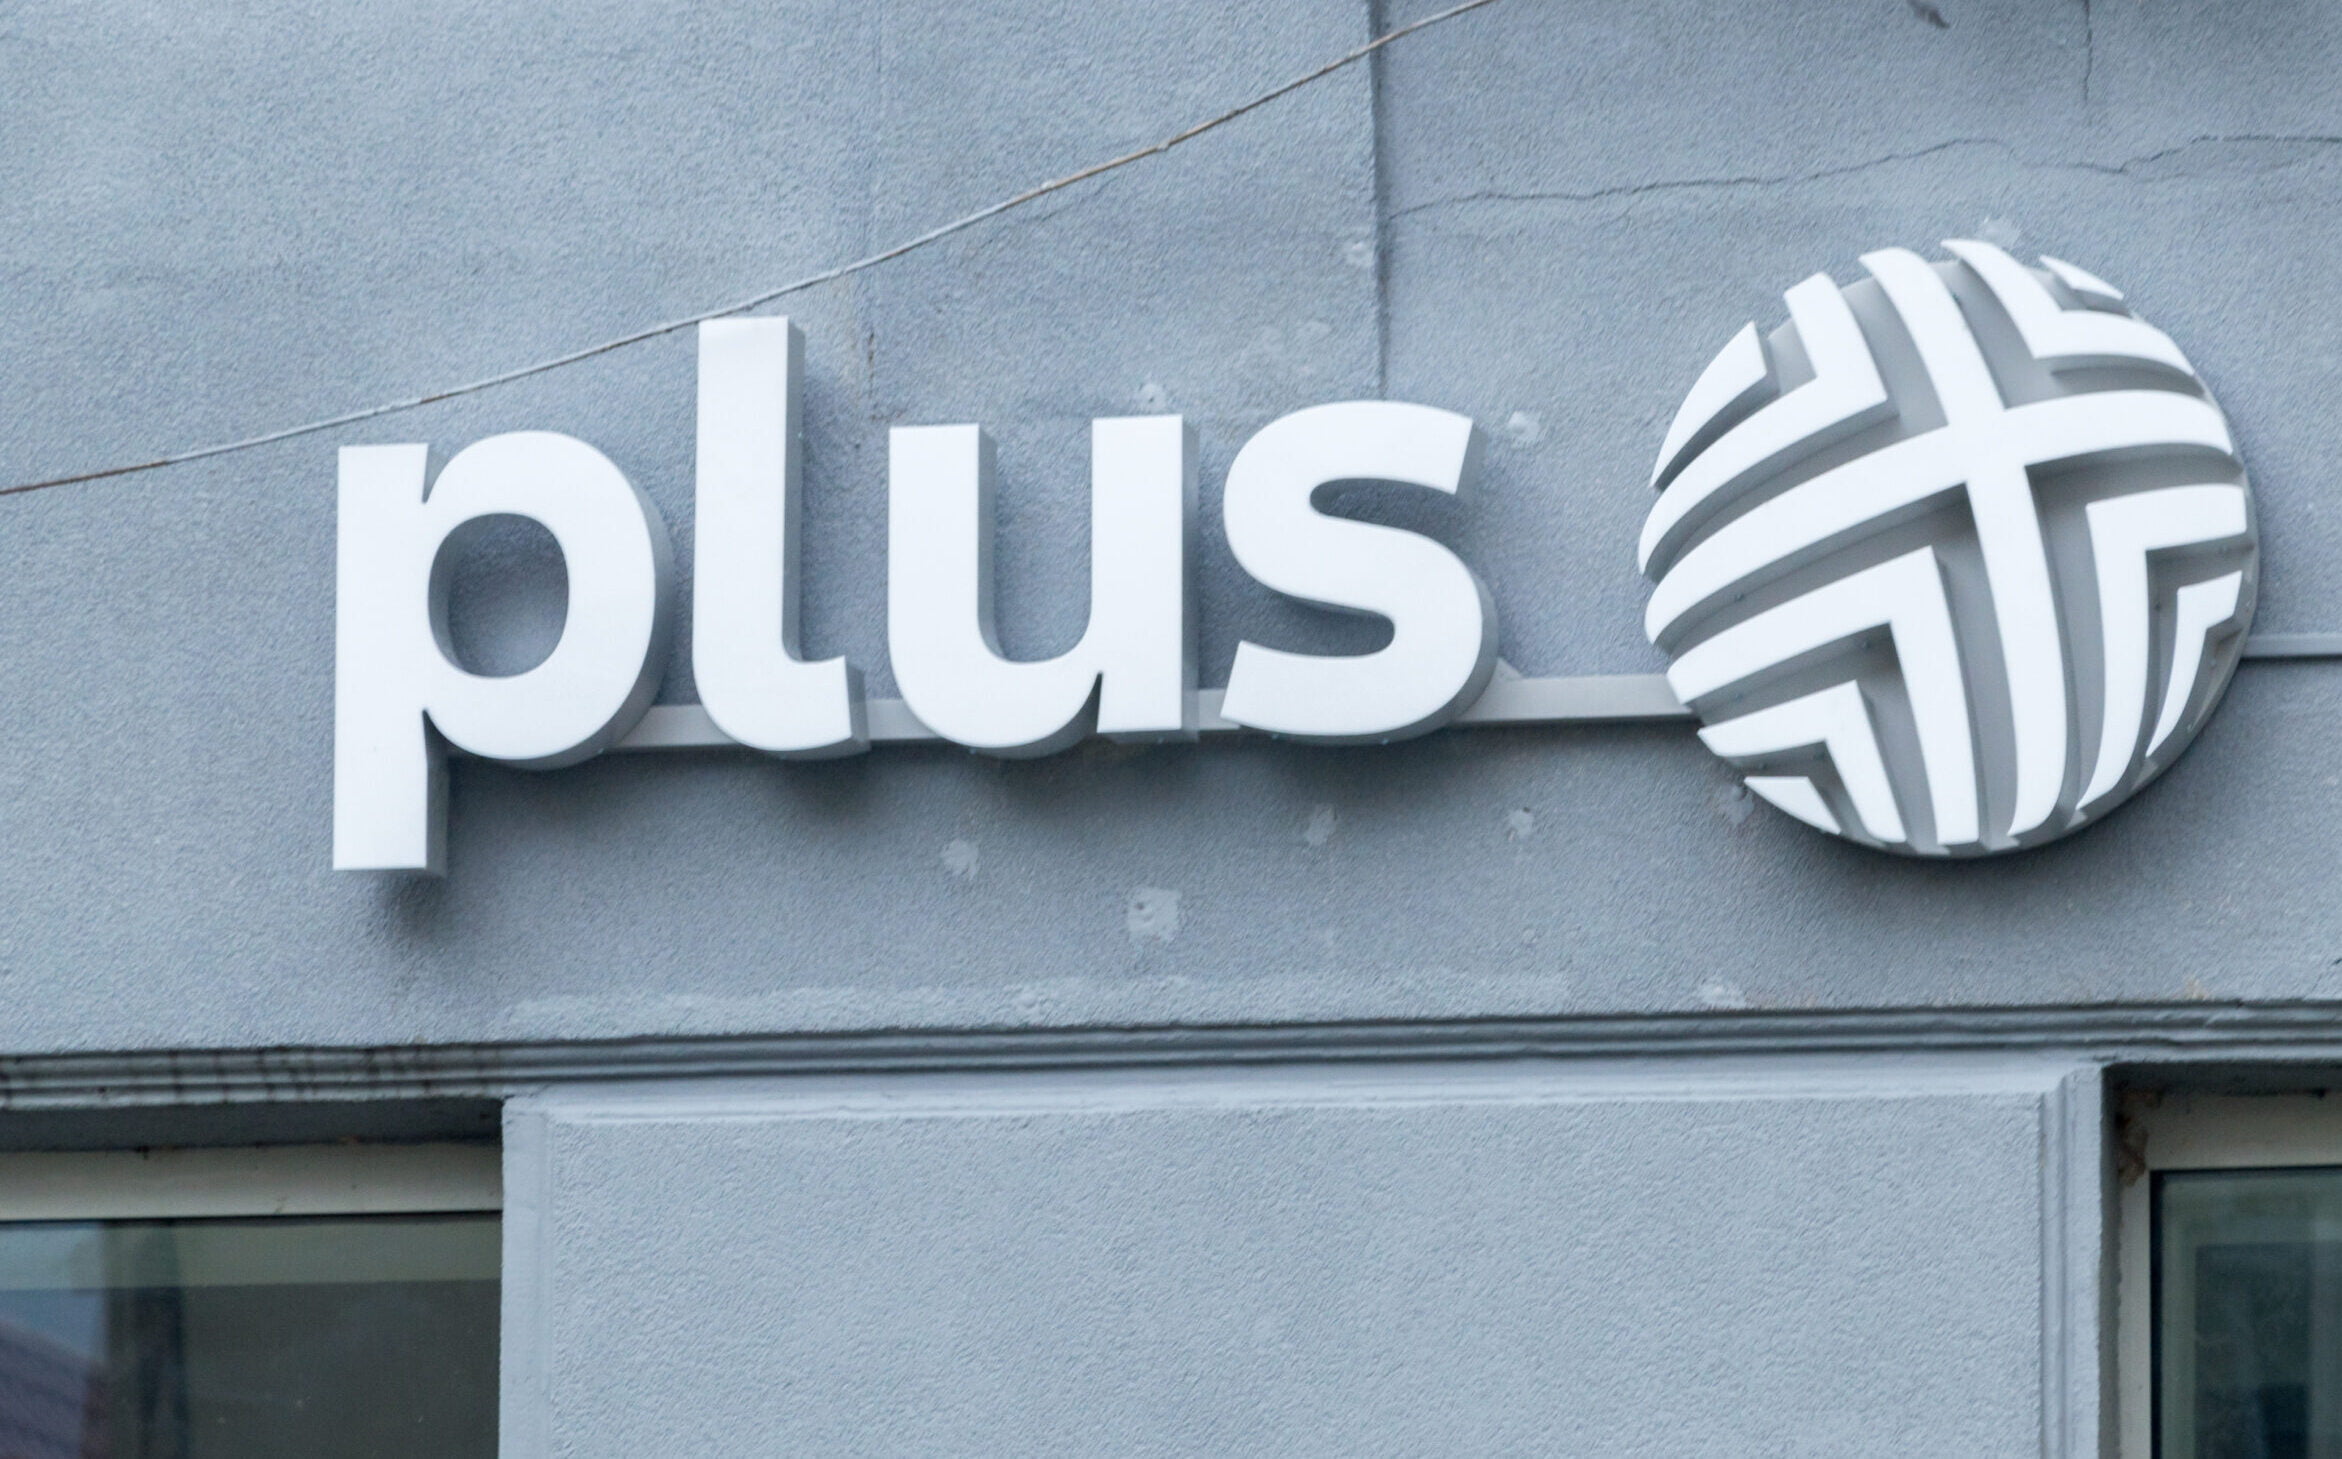 Widok na logo "plus" zamocowane na ścianie zewnętrznej budynku, składające się z białych liter i kołowego, stylizowanego symbolu na szarym tle.